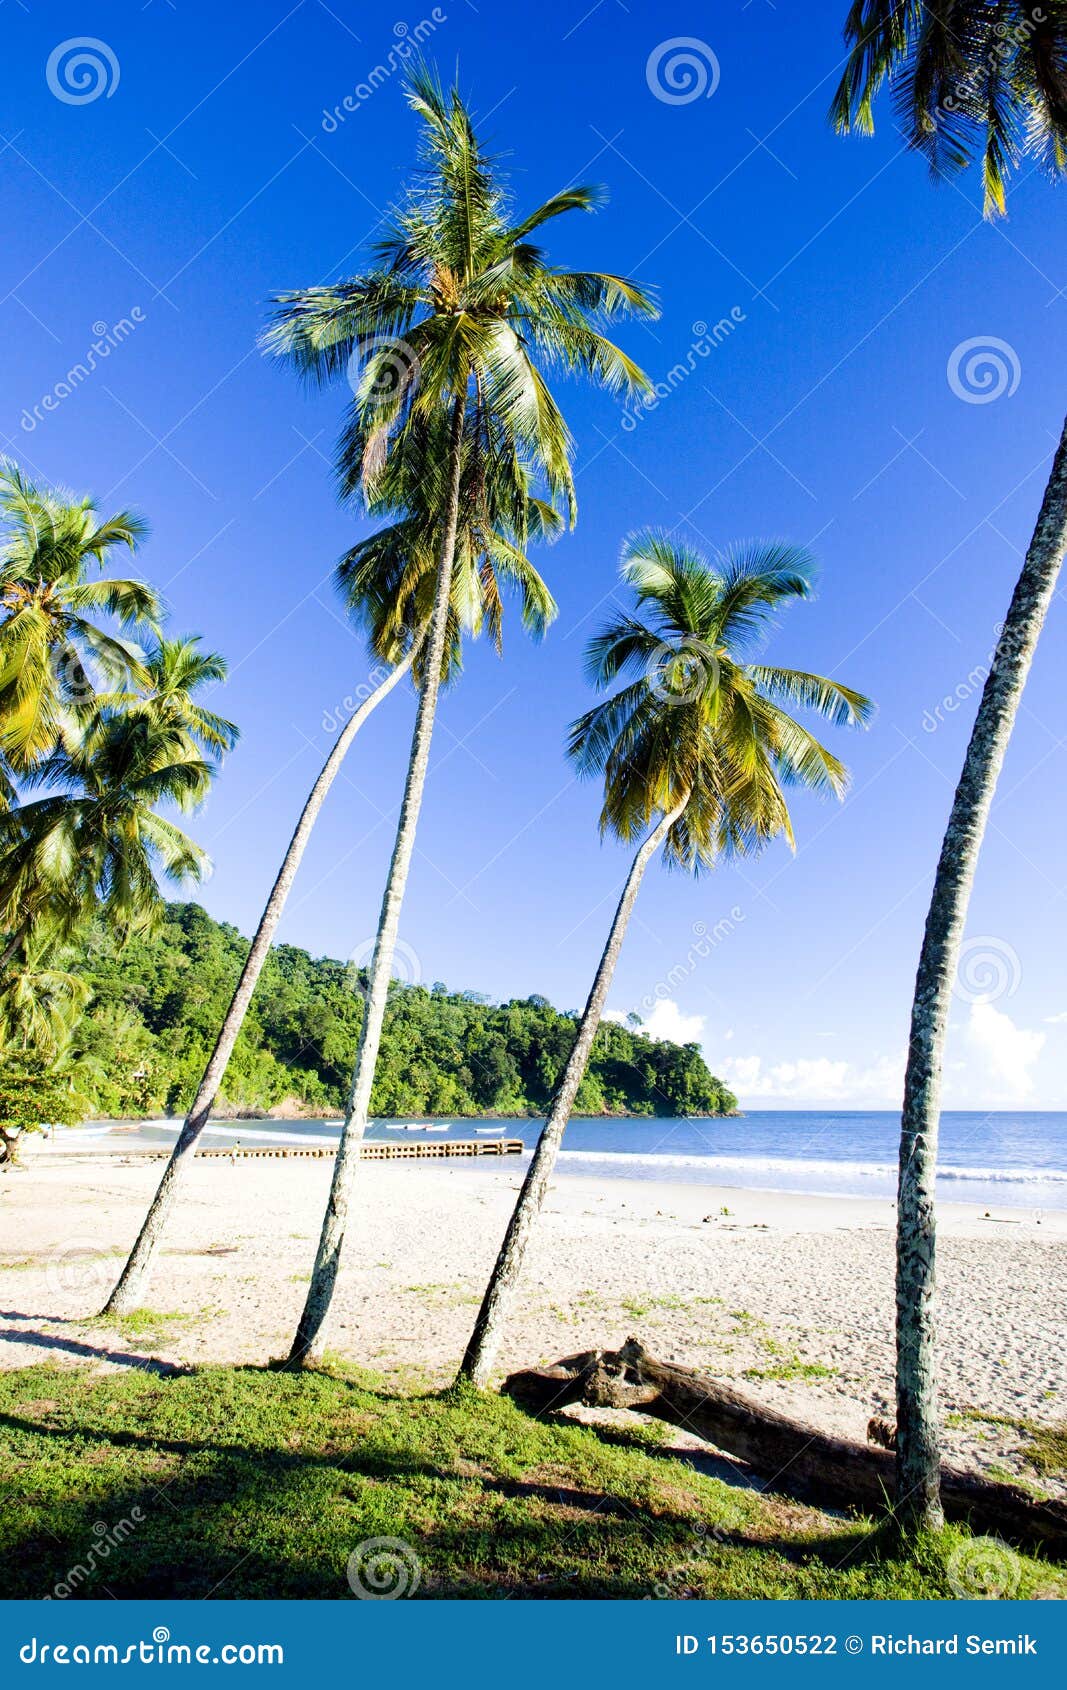 Maracas Bay, Trinidad stock photo. Image of botany, holiday - 153650522